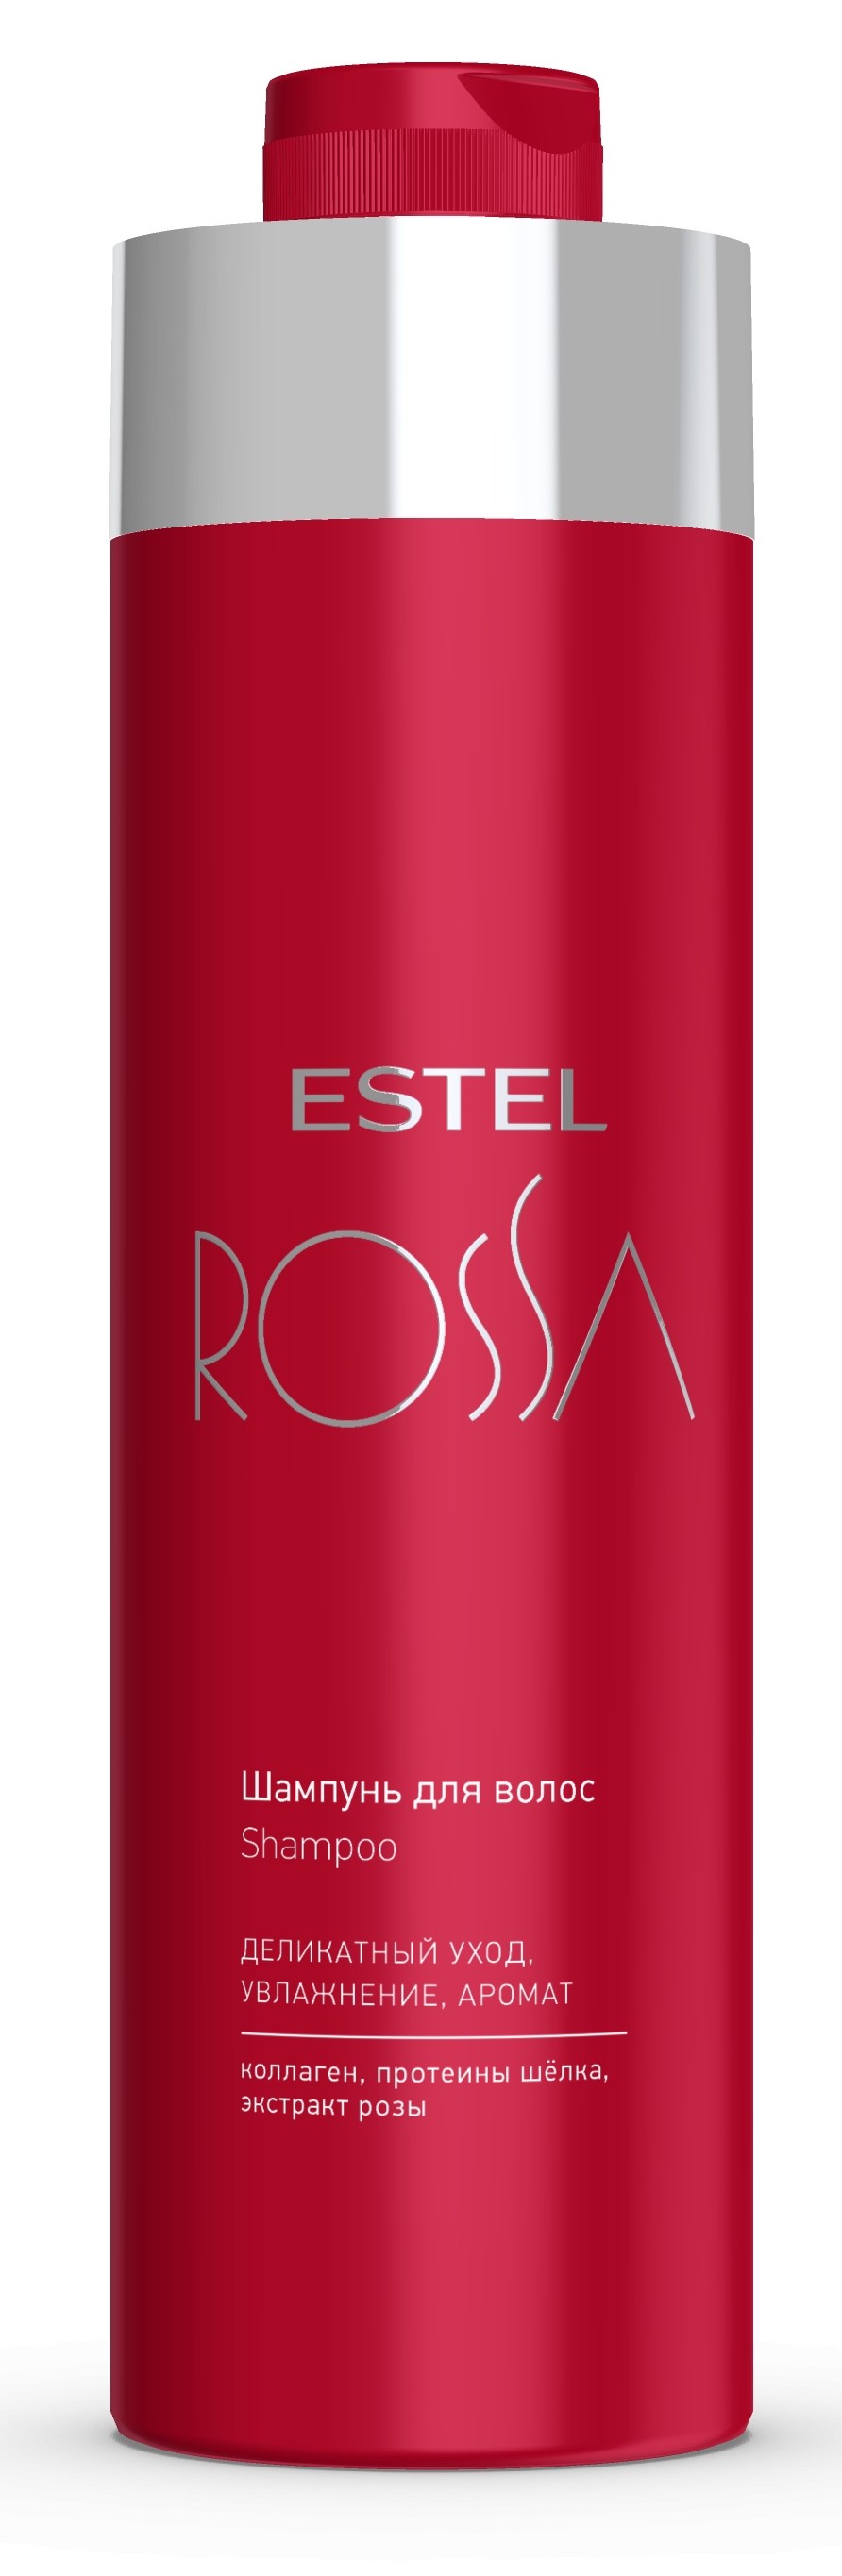 Купить Estel Professional Шампунь для волос, 1000 мл (Estel Professional, Rossa)